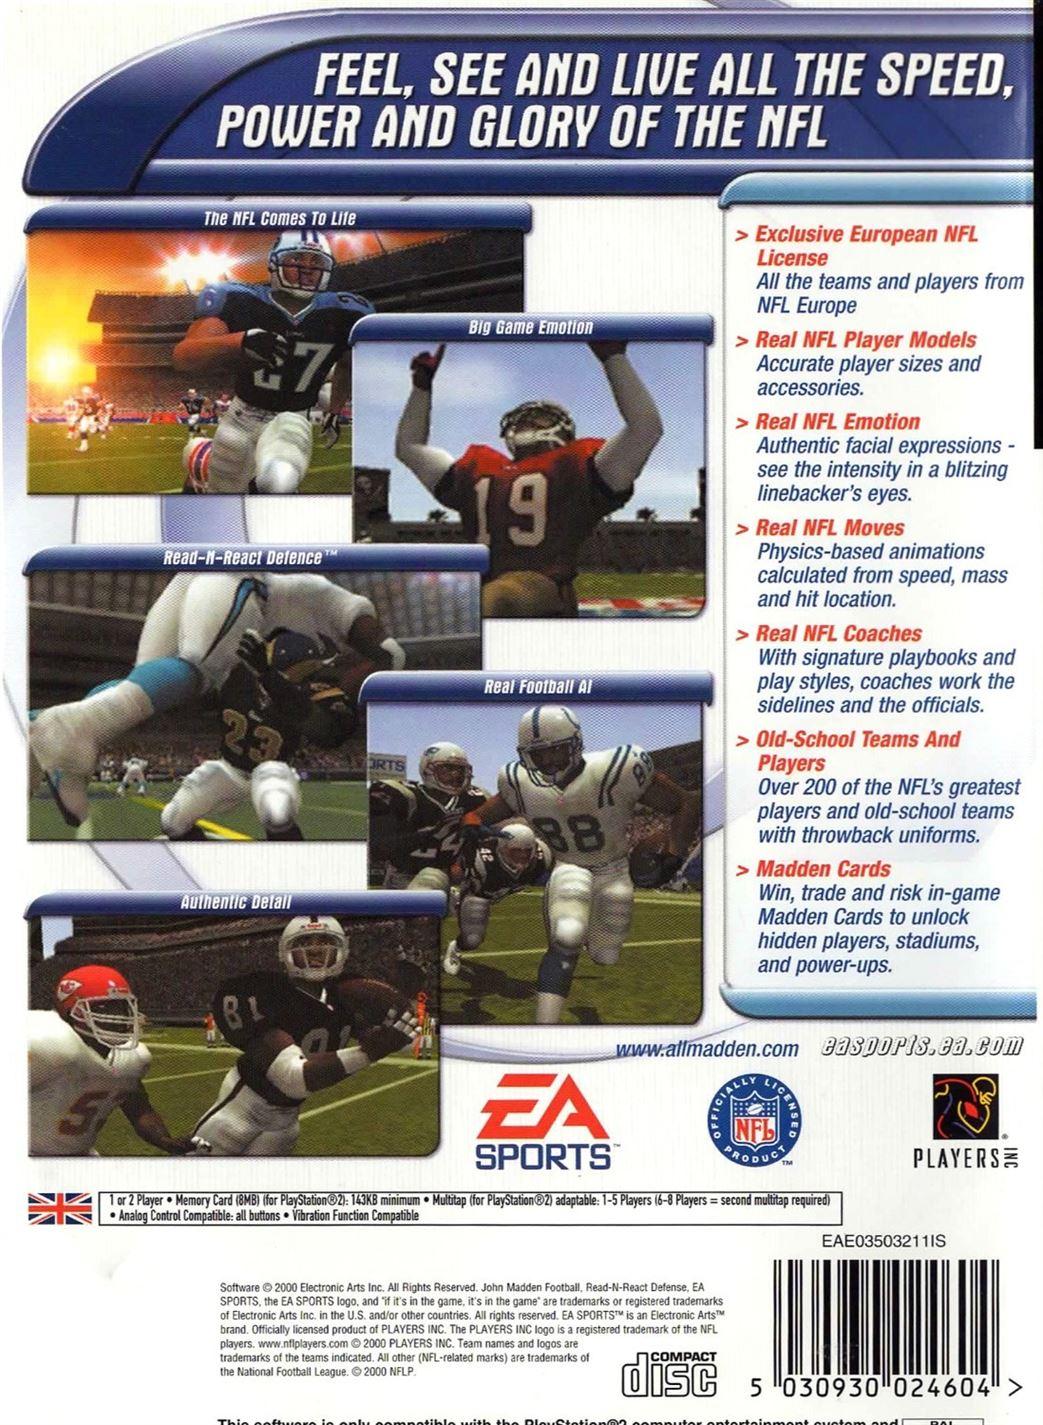 Madden NFL 2001 PS2 (PlayStation 2) - UK Seller